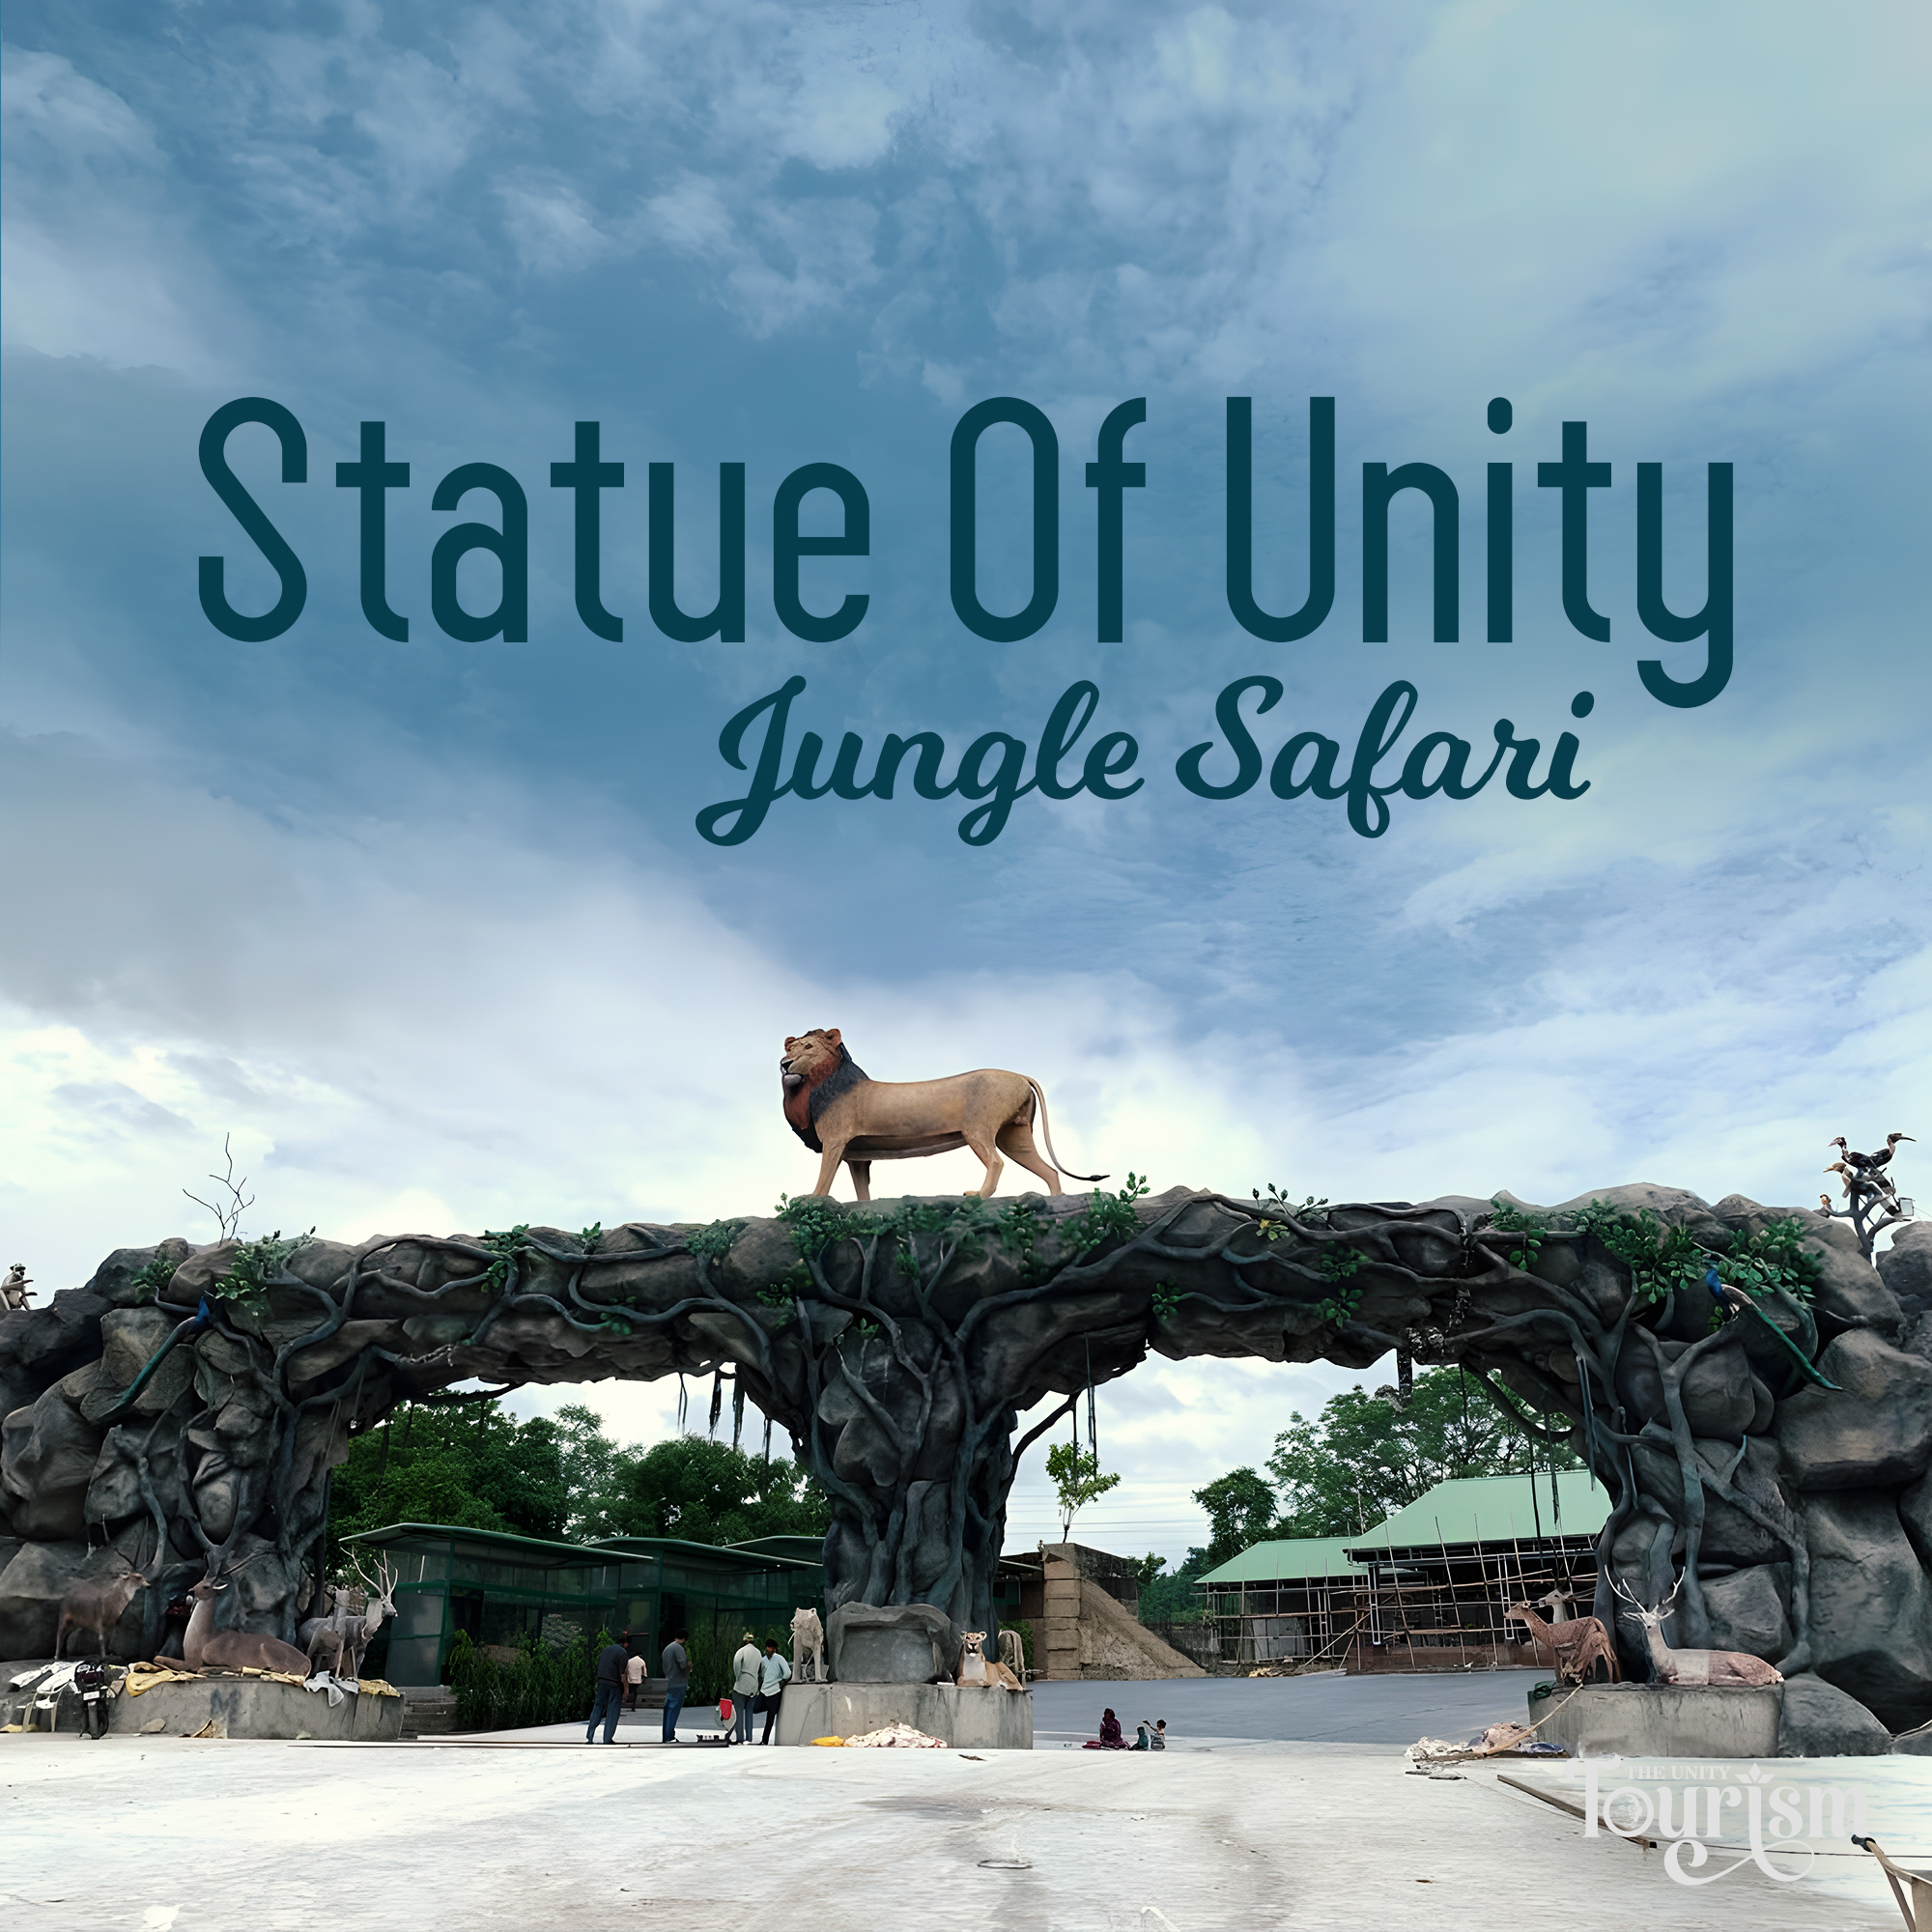 jungle safari at statue of unity ticket price